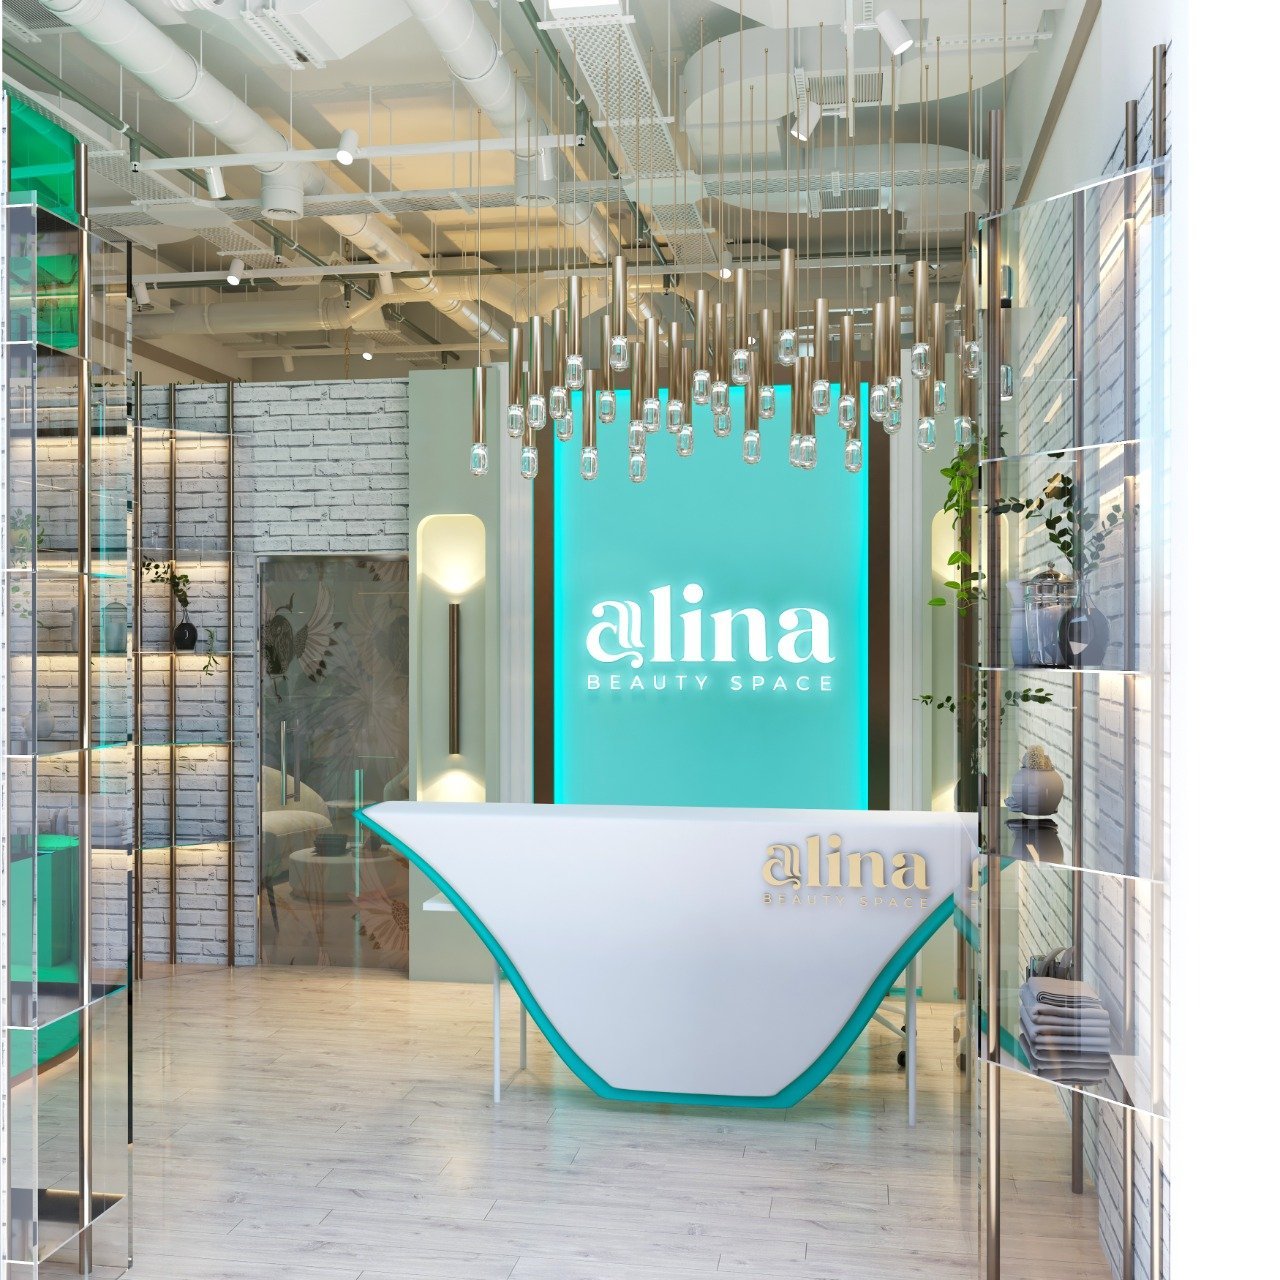 Alina-beauty Space